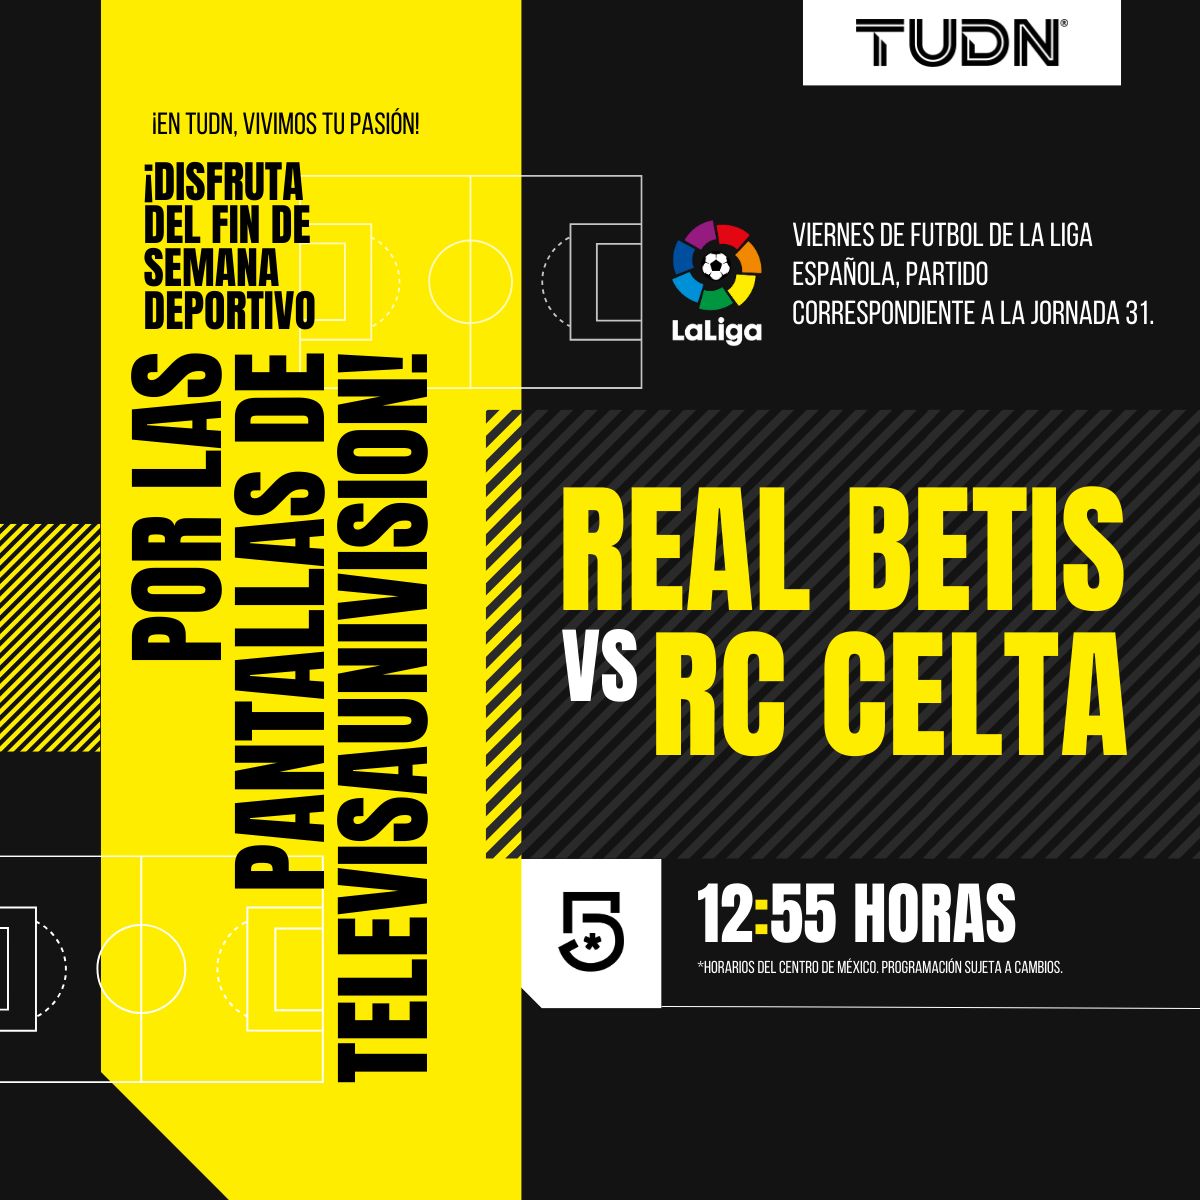 ¡Vive la emoción de la Liga Española! 💥 Real Betis vs RC Celta ⚽️ ¡Sigue cada jugada a las 🕘12:55 PM! #VivimosTuPasión ¡Vívelo a través de #Canal5!